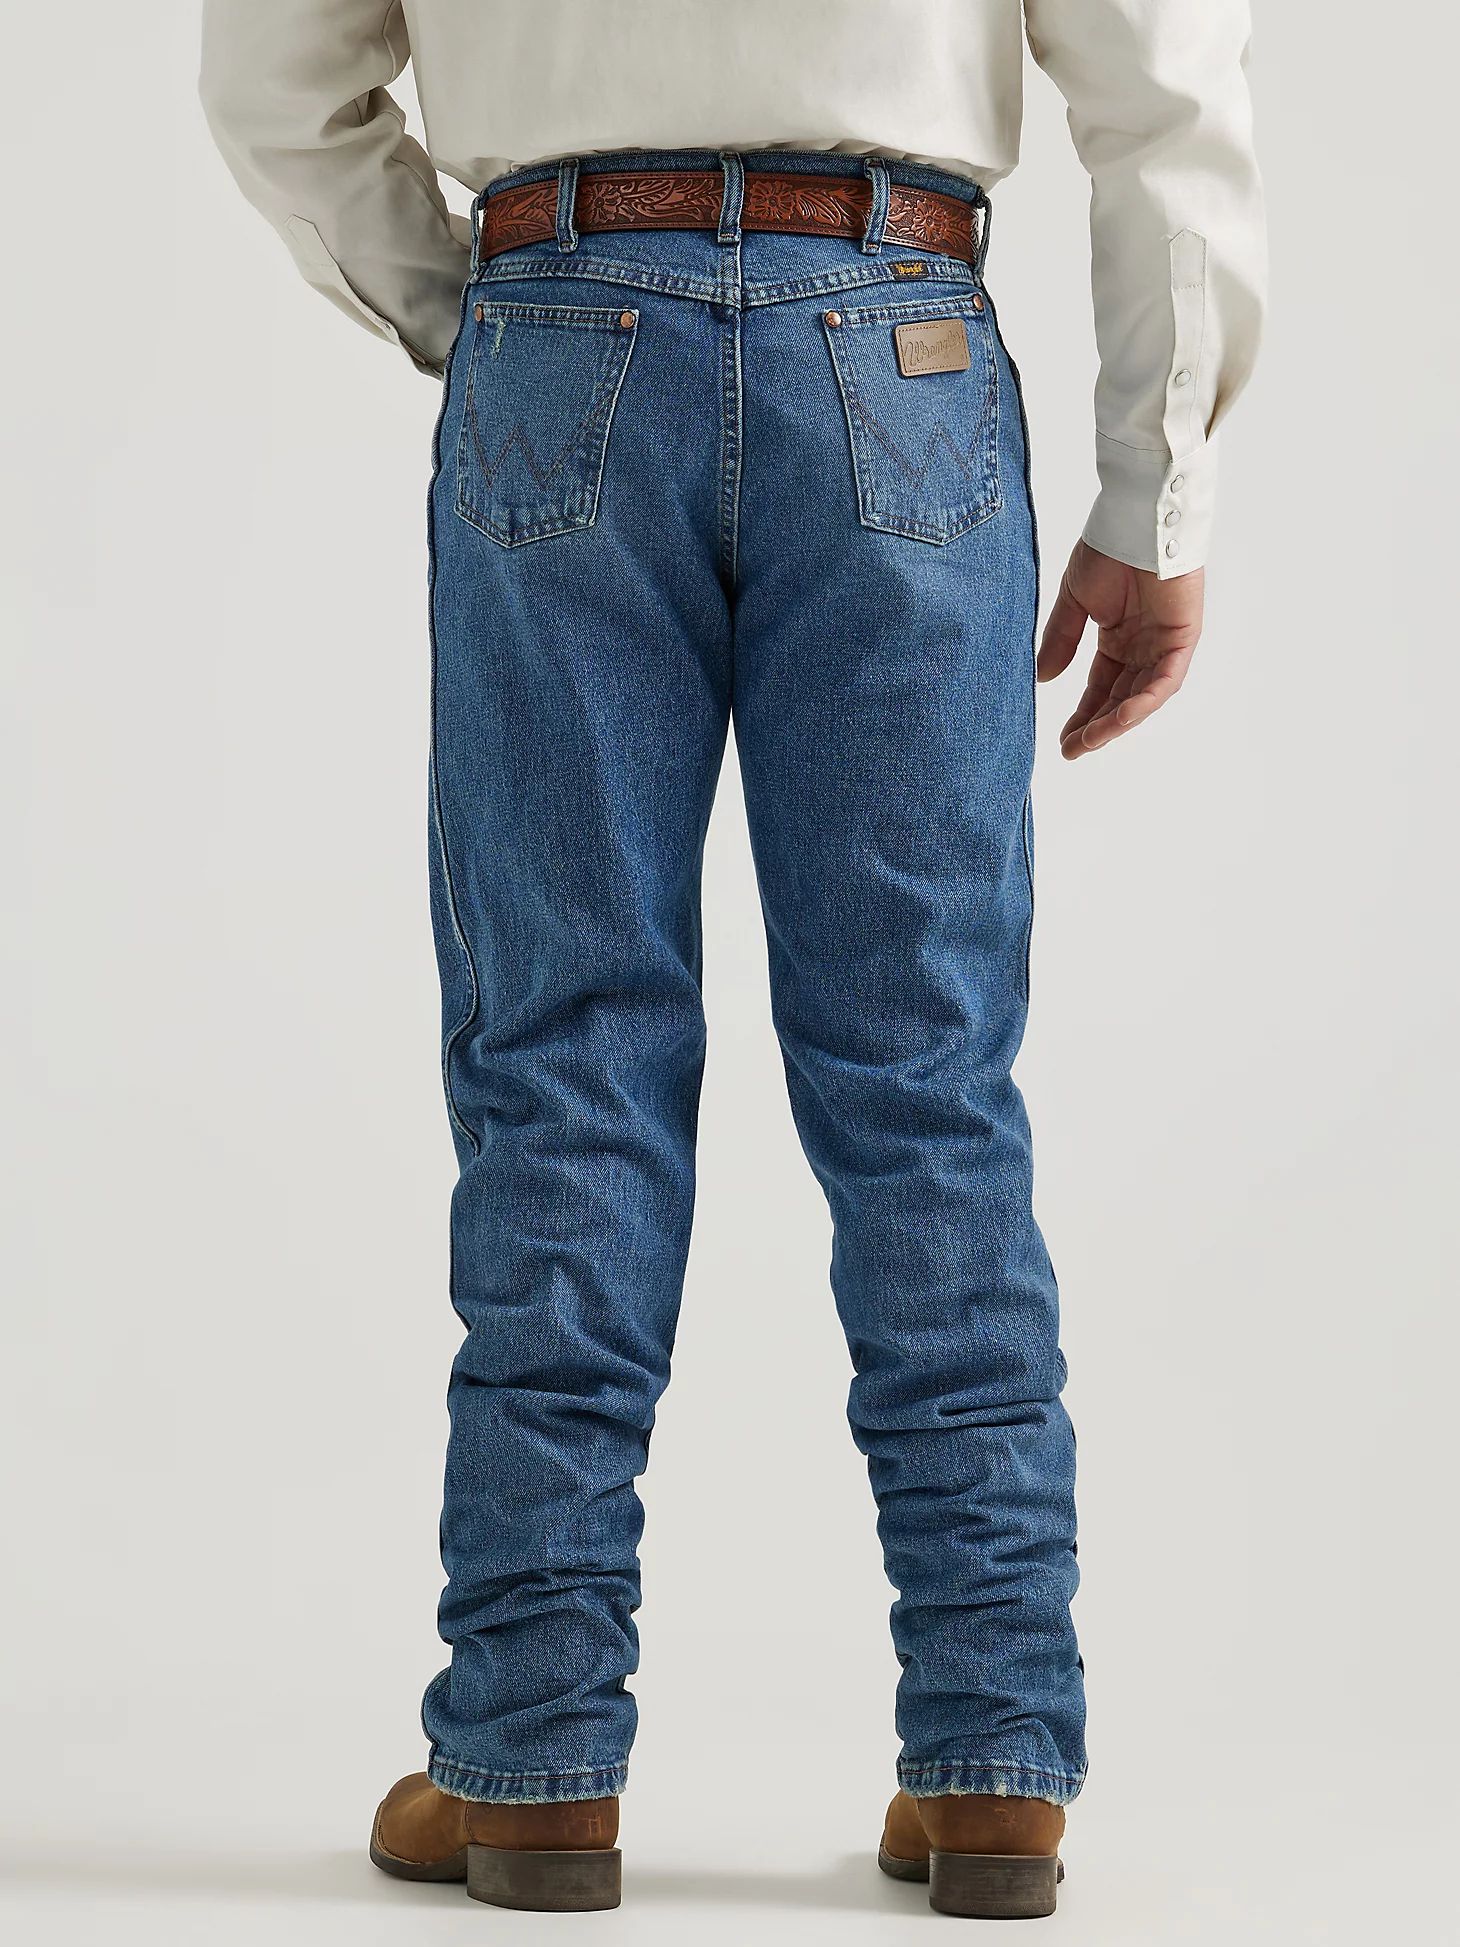 Vintage-Inspired Cowboy Cut® Regular Fit Jeans in Indigo Blue | Wrangler